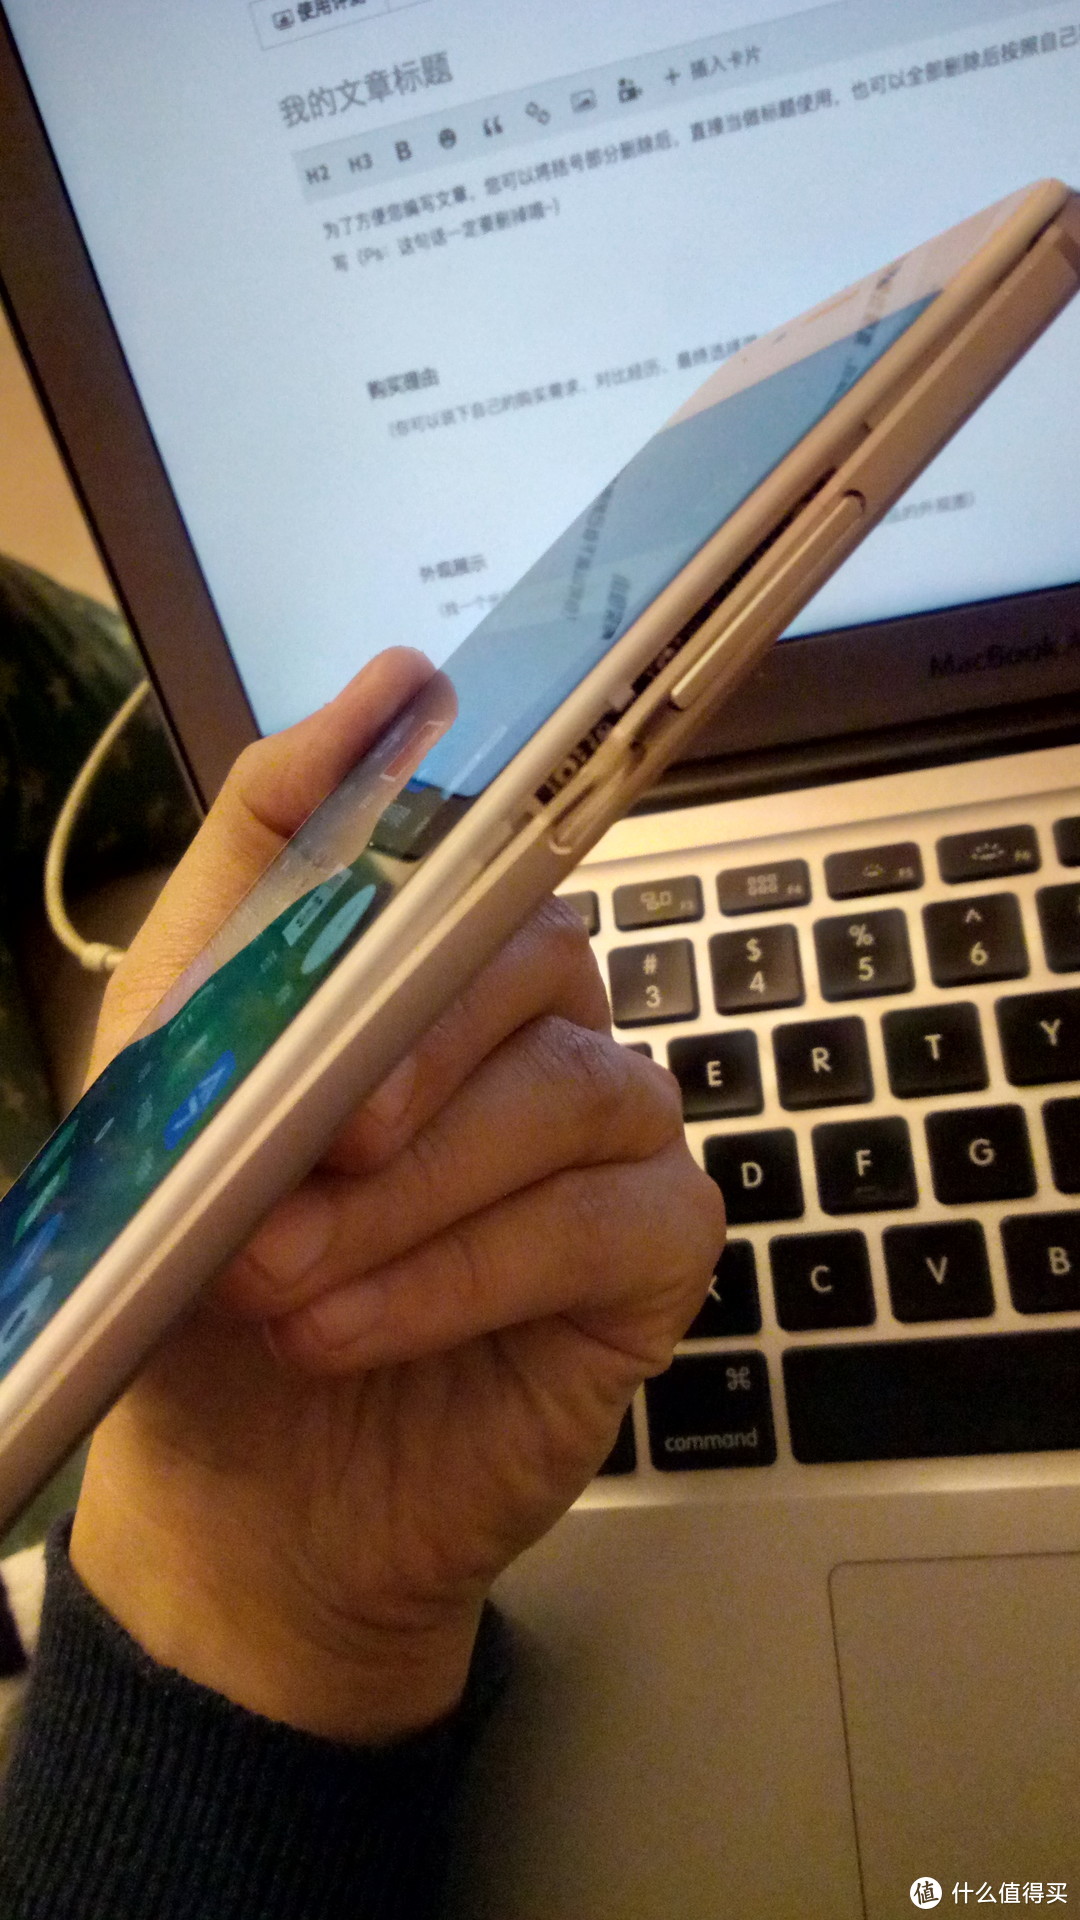 可能是我用过的“最短命”的手机—MEIZU 魅族 魅蓝 Note6 使用感受